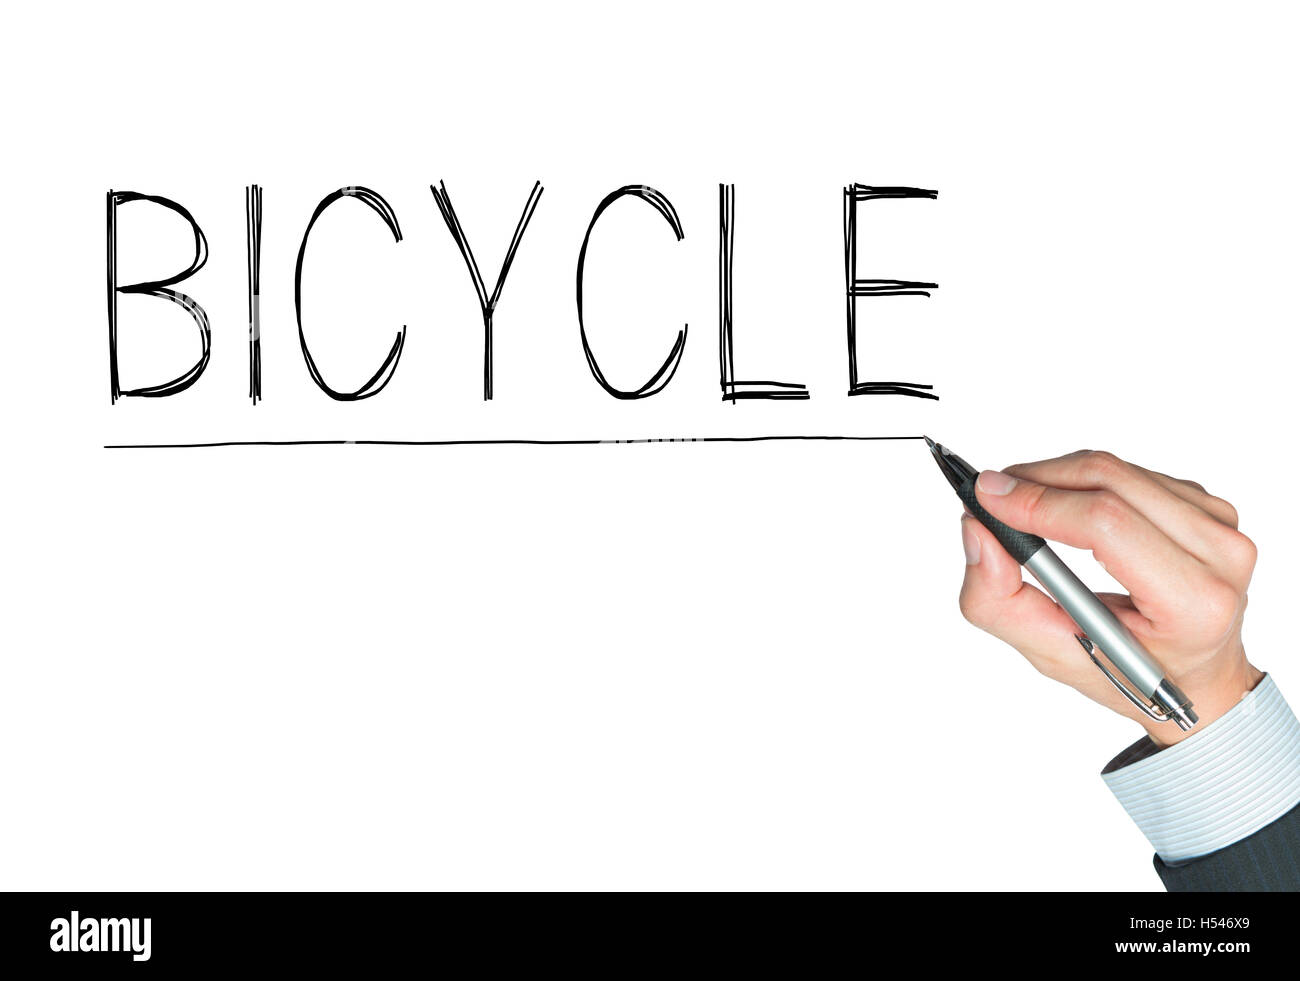 Bicicletta scritto a mano, la scrittura a mano sul pannello trasparente, foto Foto Stock